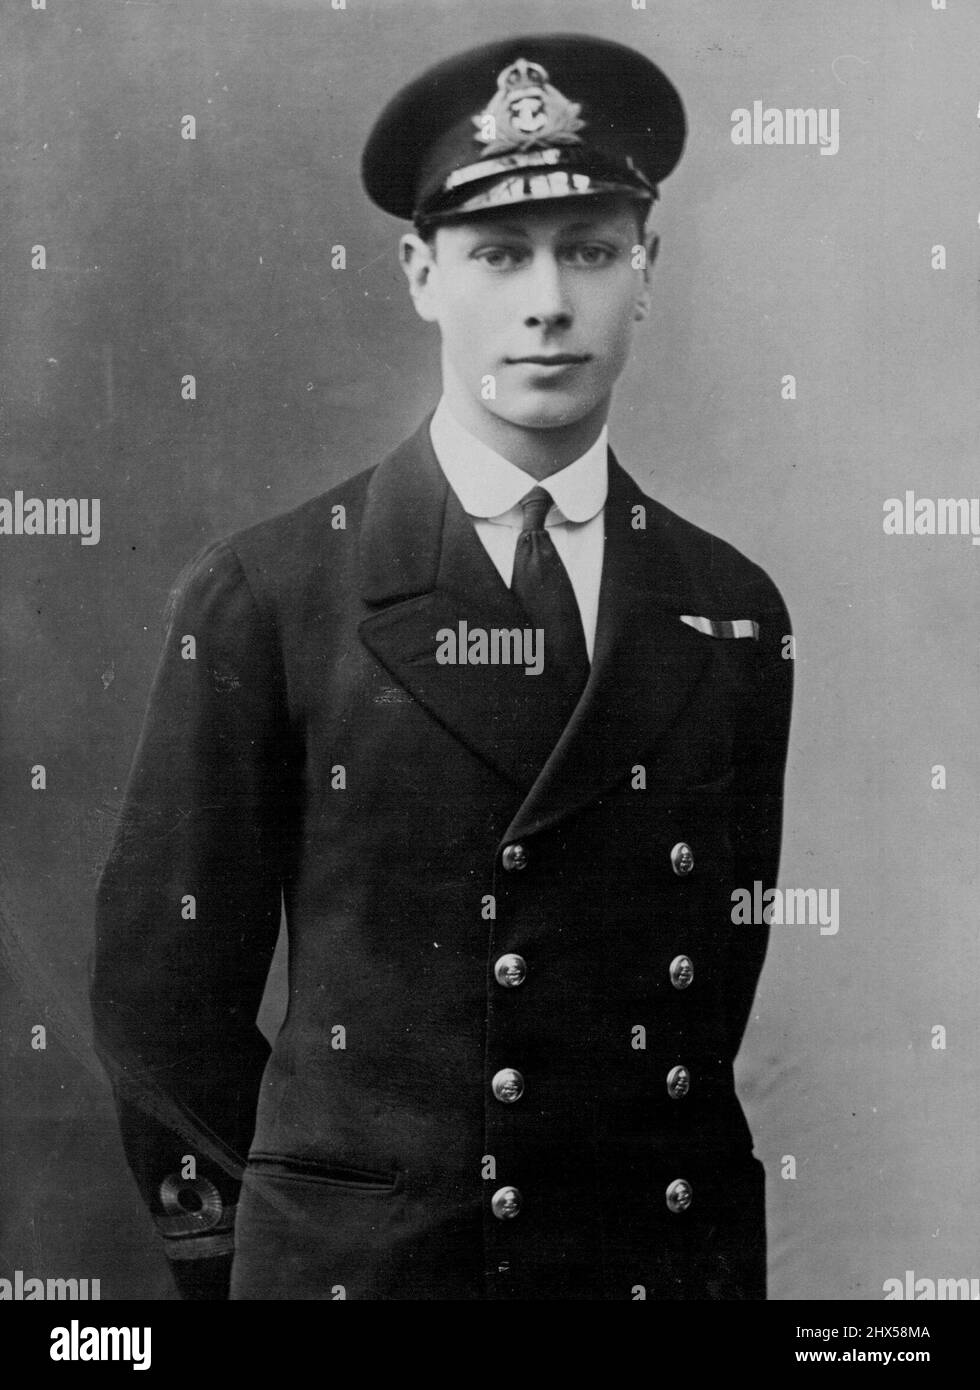 King George VI - Kindheit und frühe Bilder. 22. Februar 1937. (Foto von The Associated Press of Great Britain Ltd.). Stockfoto